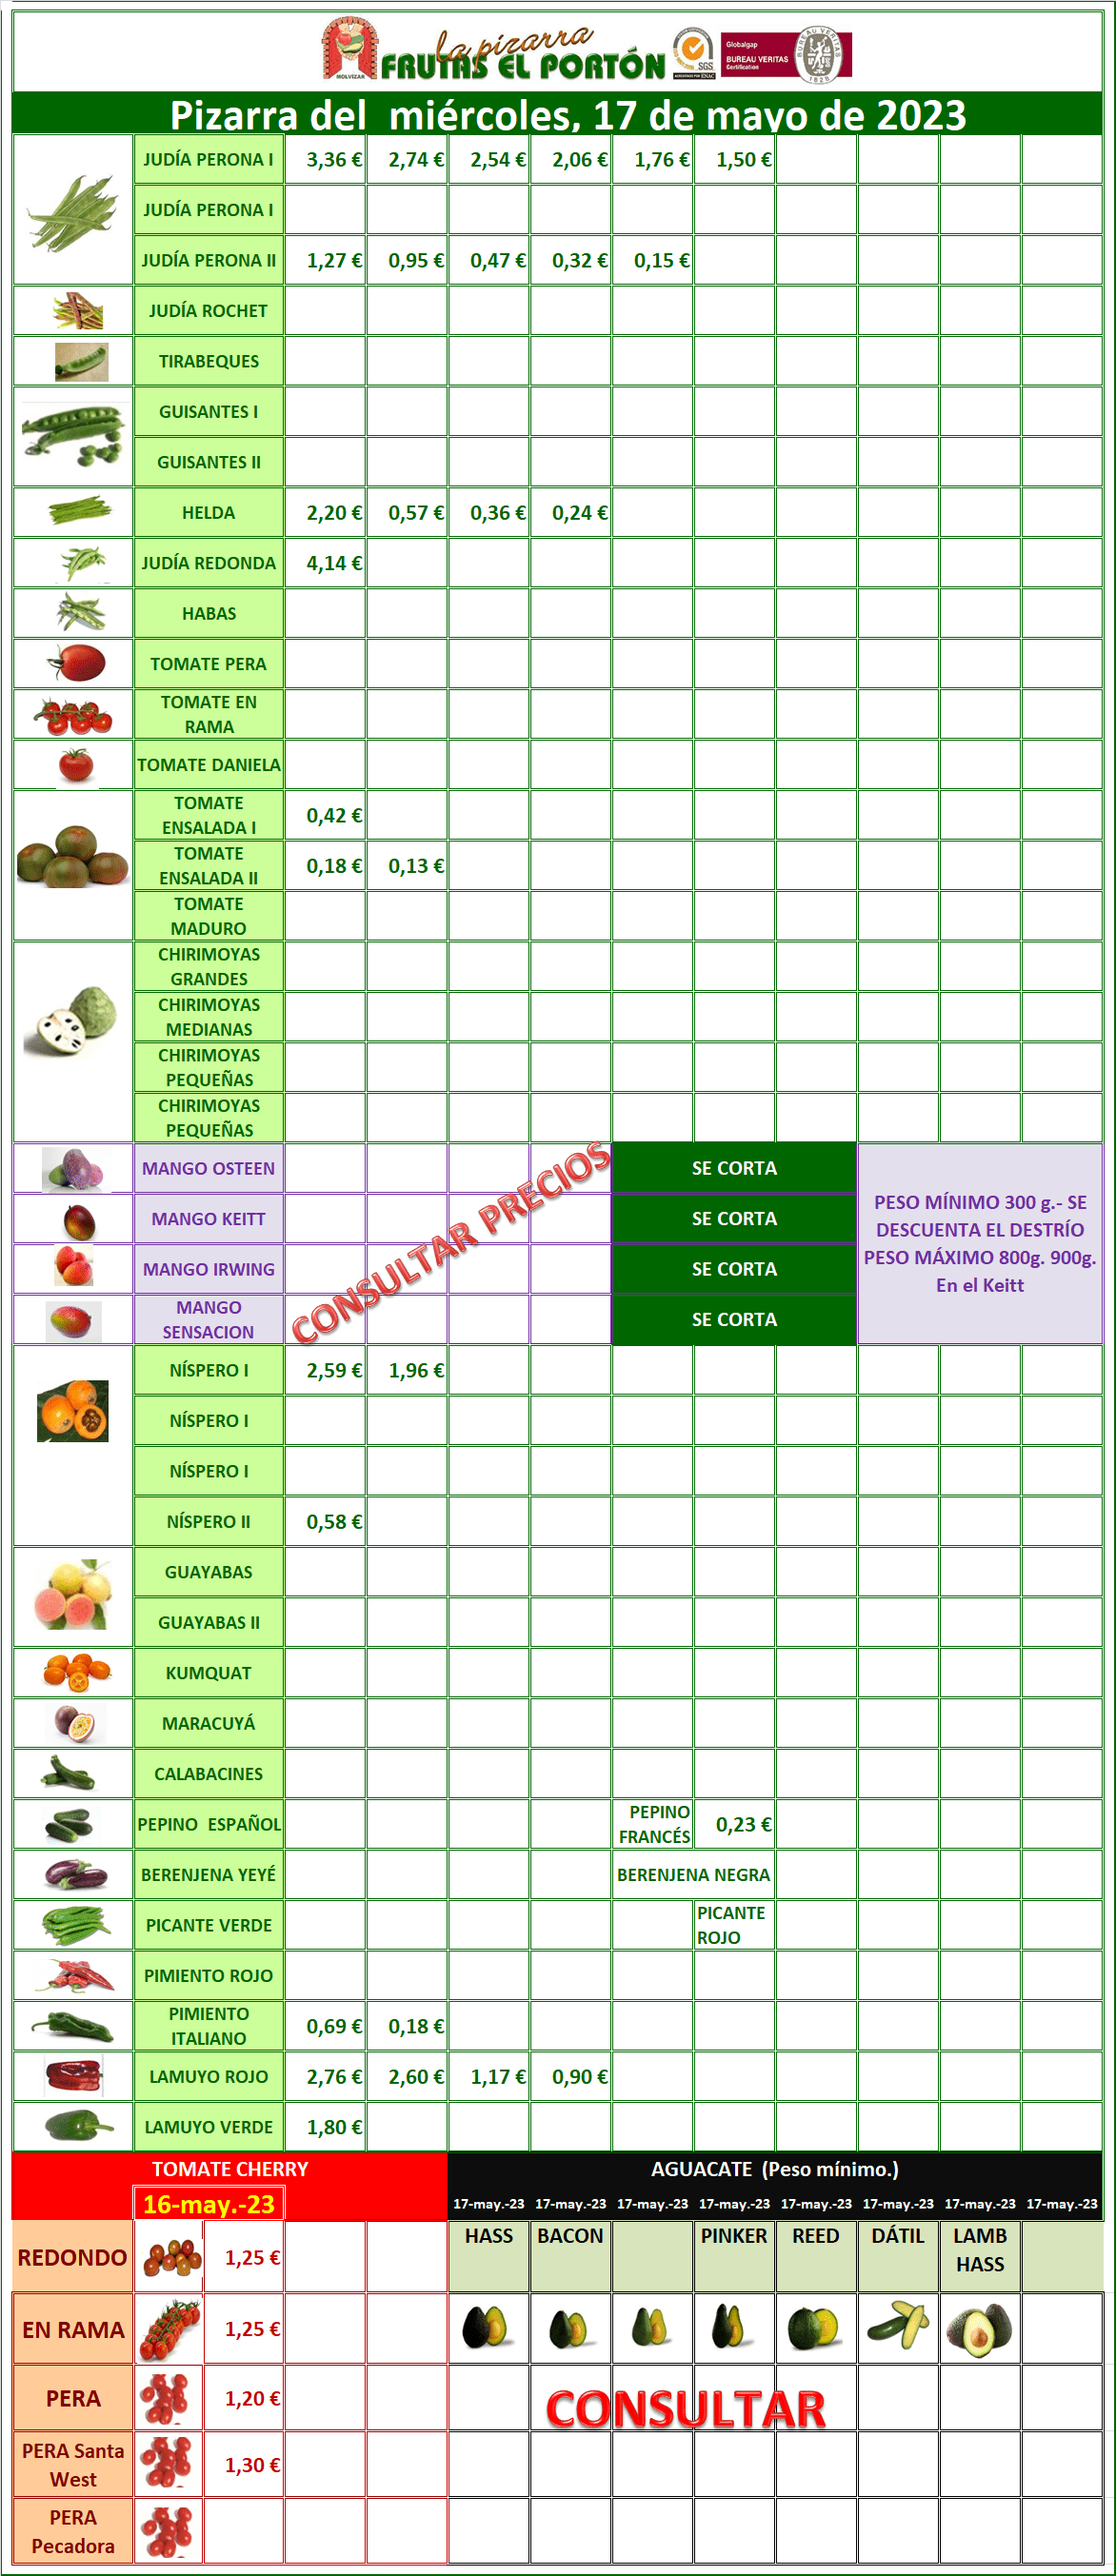 Subasta hortofrutícola Frutas el portón 17 de mayo 2023